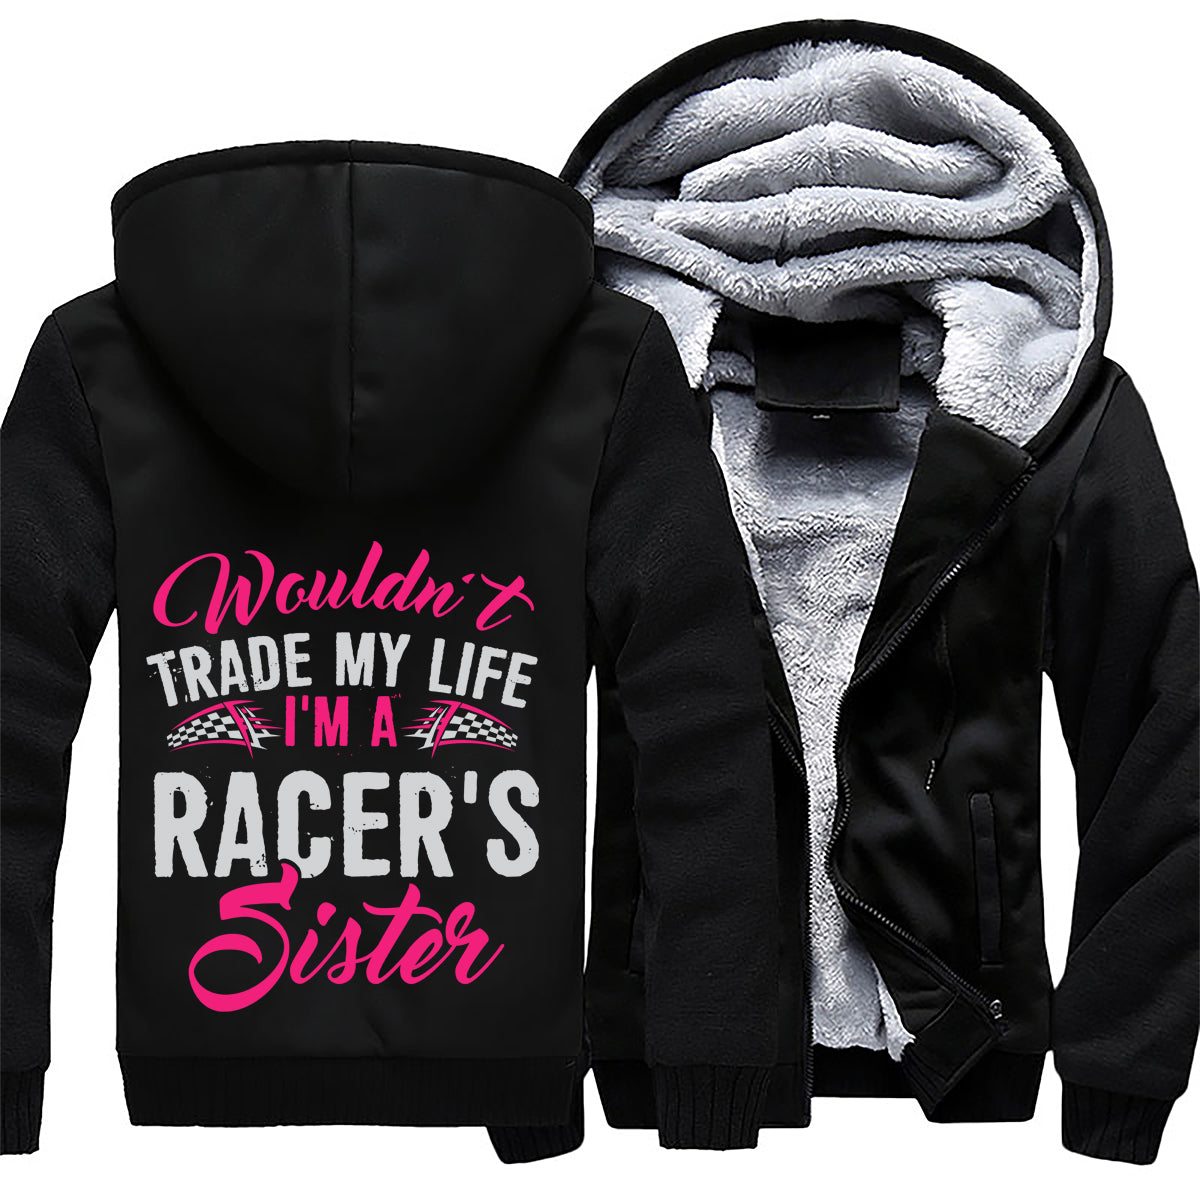 I'm A Racer's Sister Jacket 